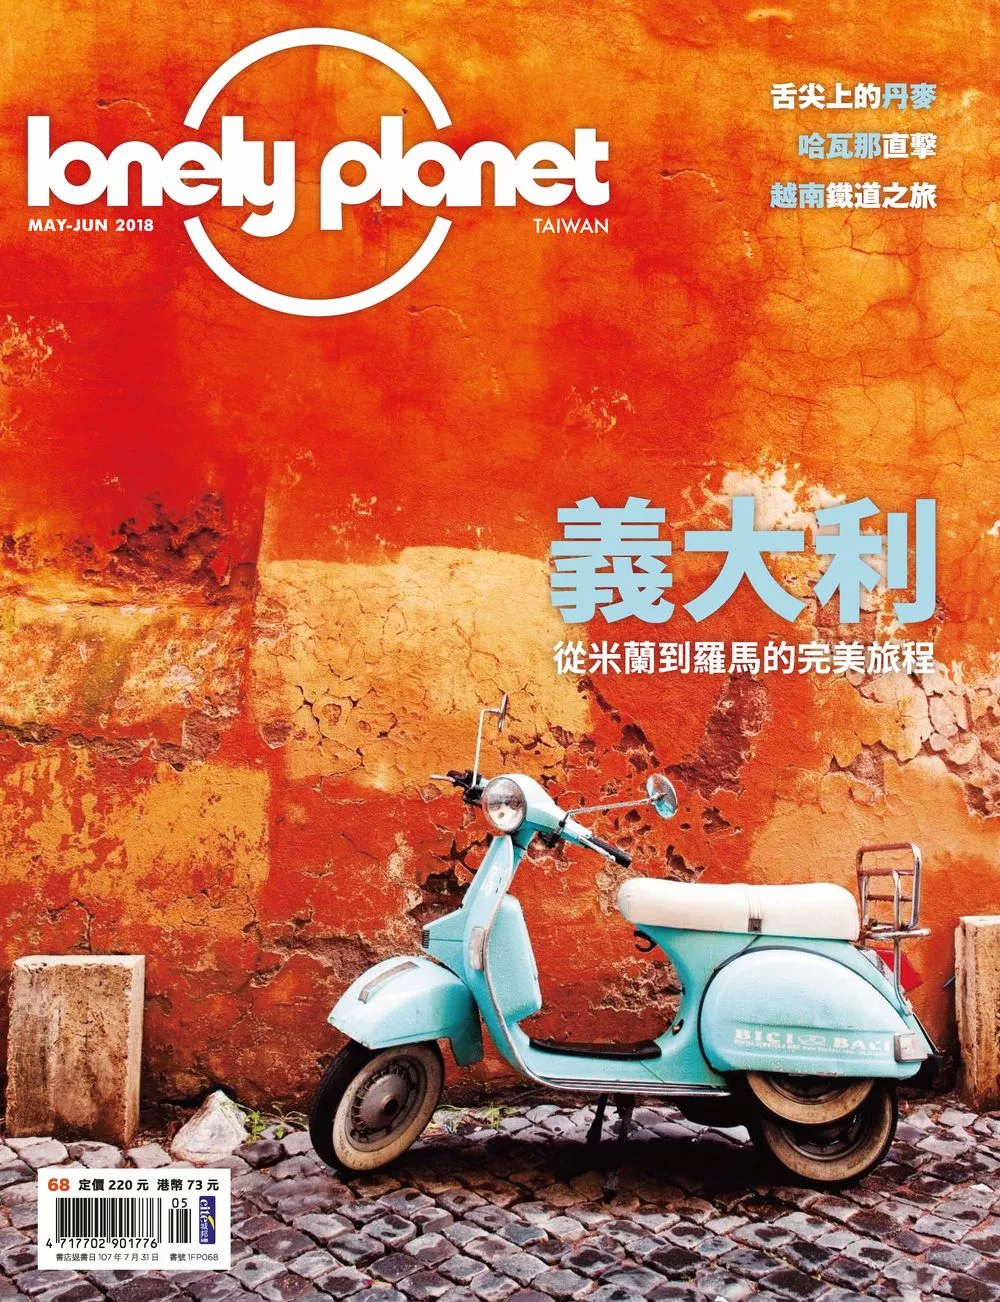 孤獨星球Lonely Planet 05+06月號/2018第68期 (電子雜誌)